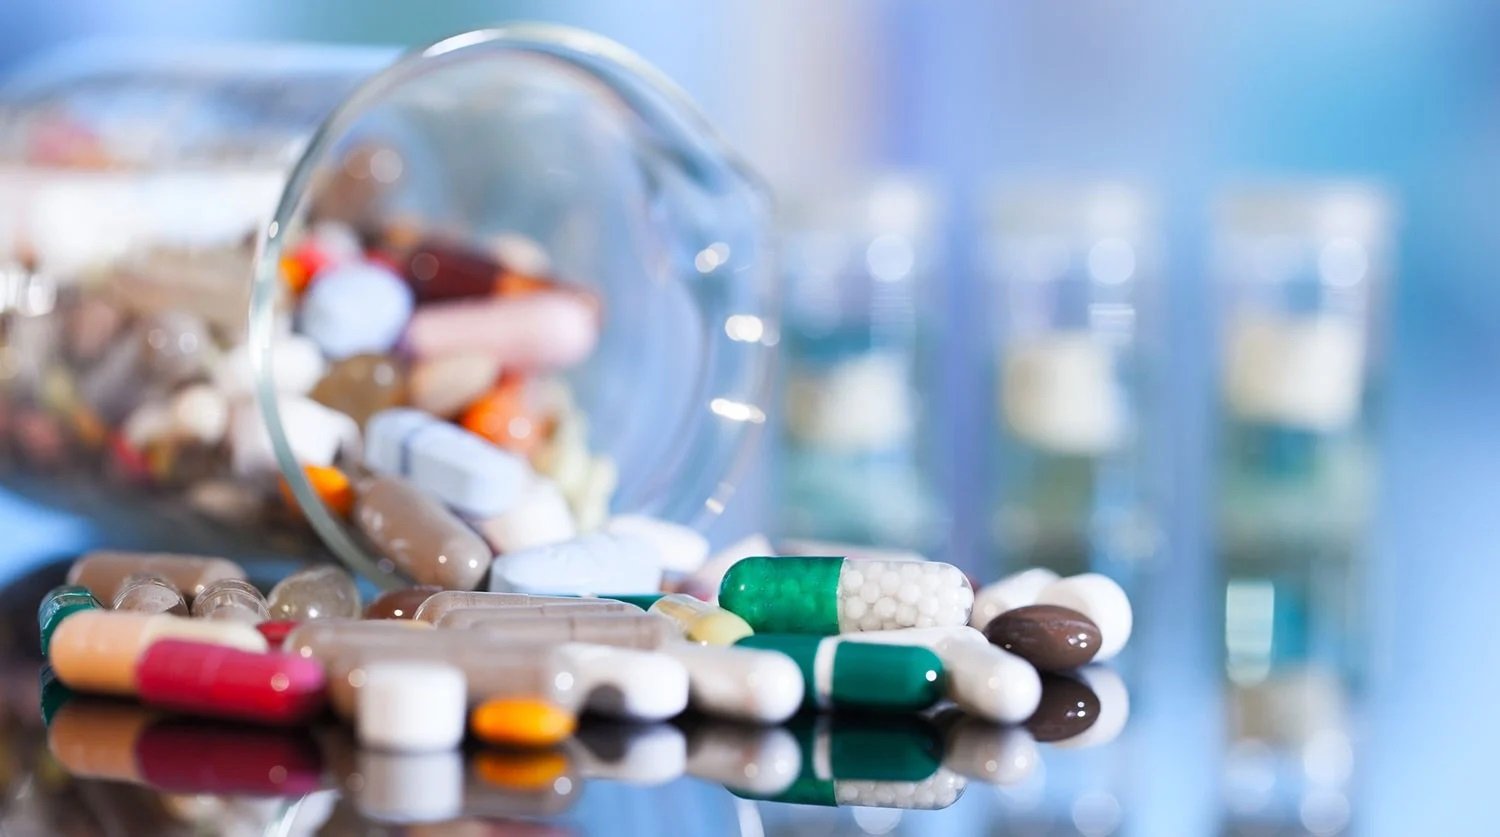 Антибиотики в Украине будут продавать только по рецепту – глава МОЗ